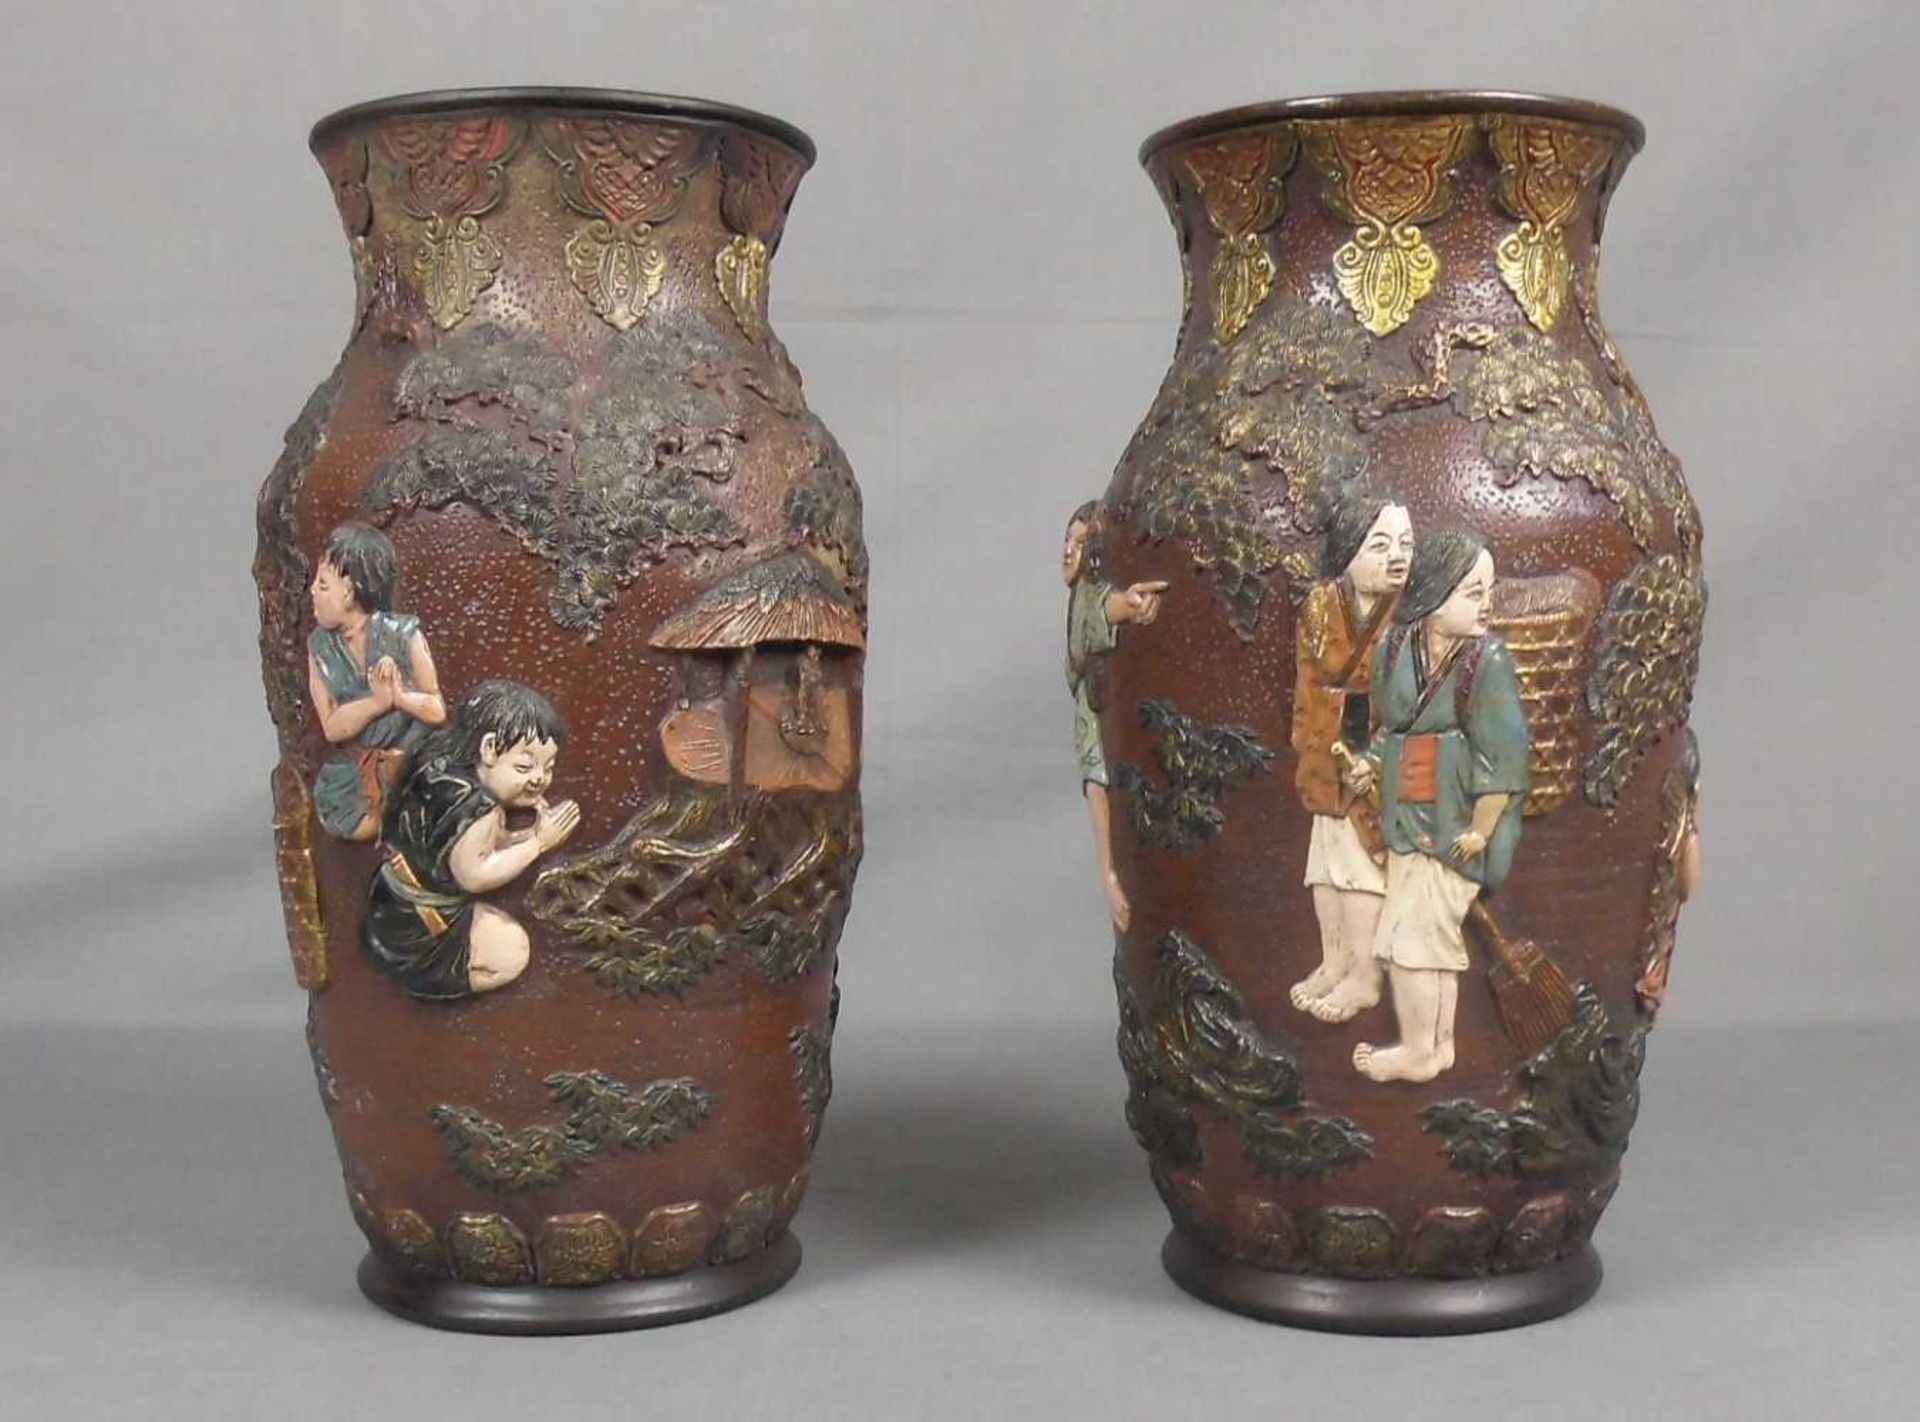 PAAR VASEN / pair of vases, Keramik, Japan. Balusterform mit reliefierter Wandung: Figuren im